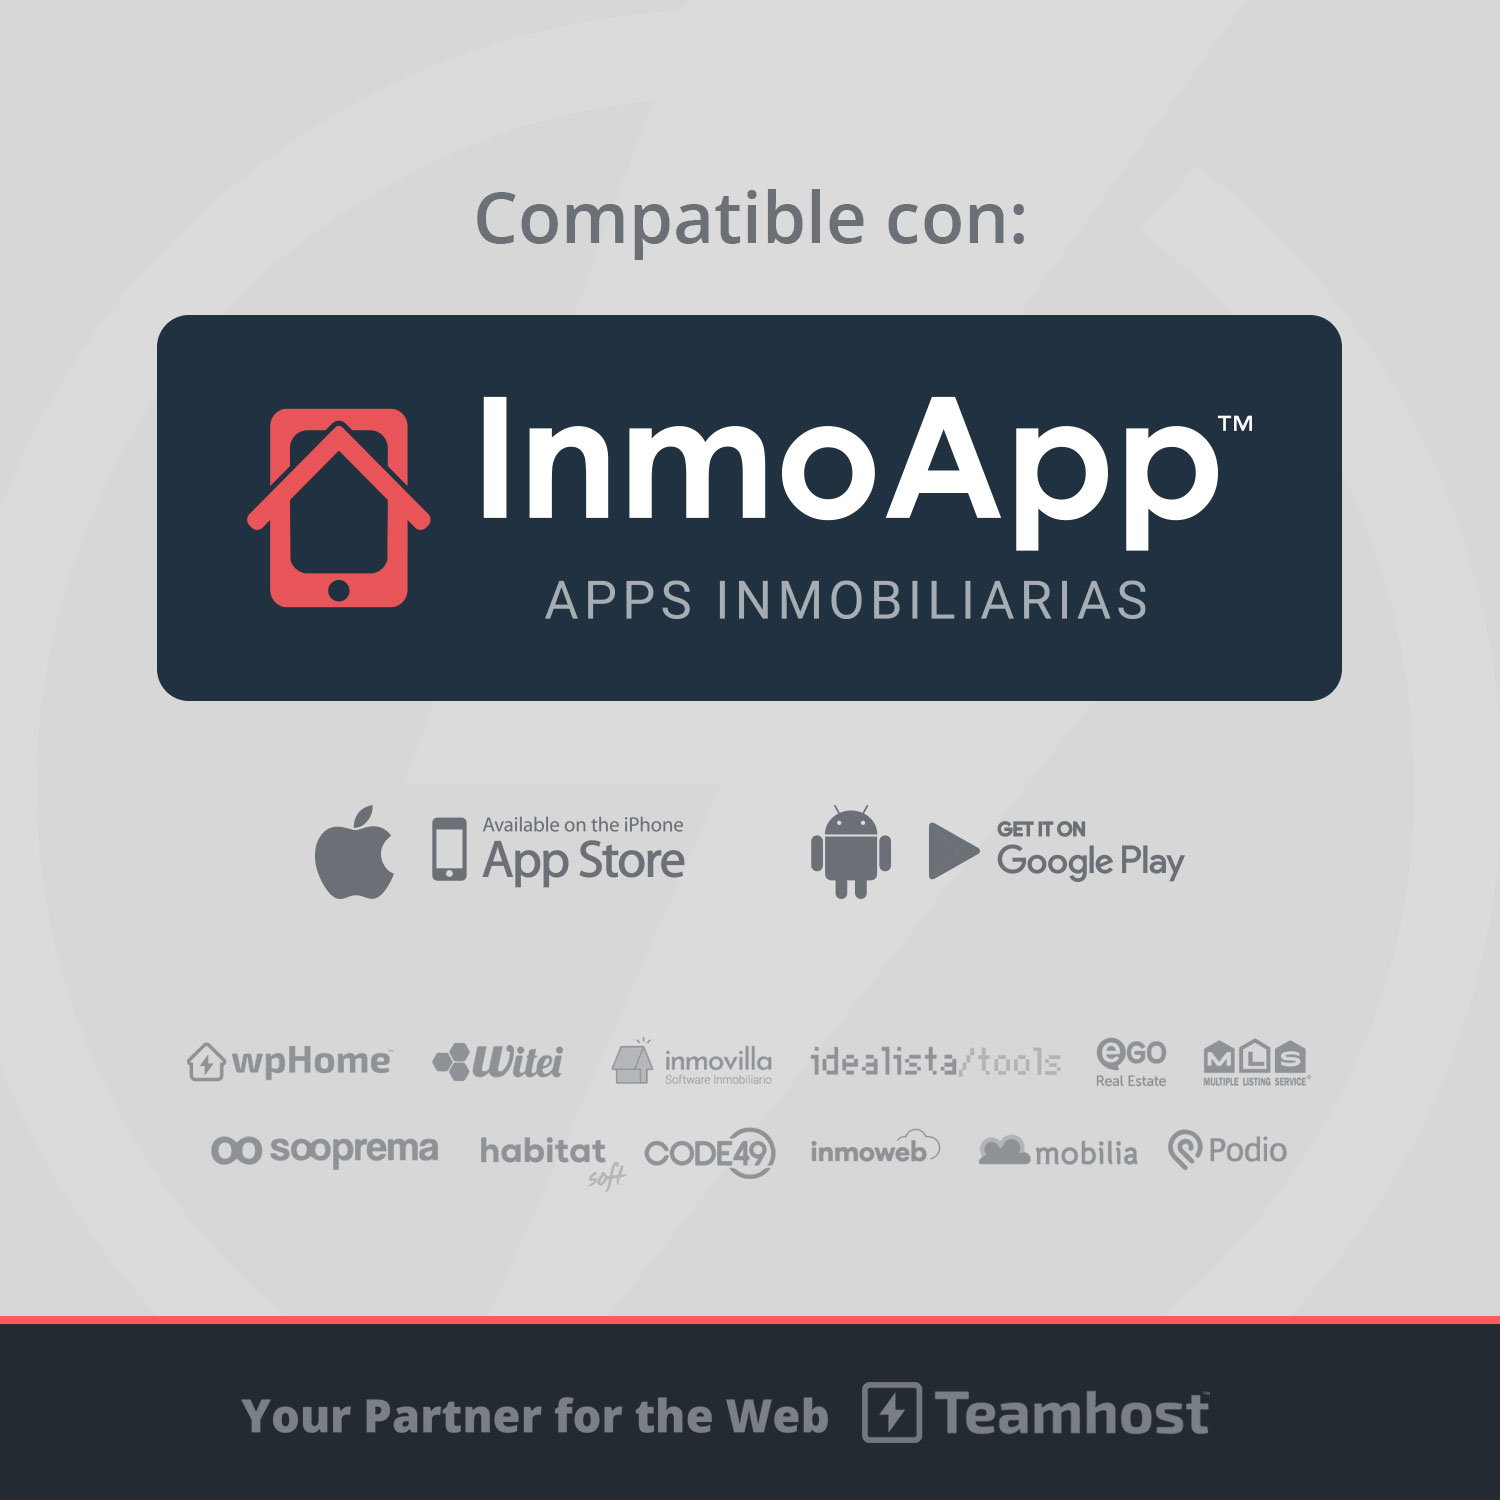 Compatible con App Inmobiliaria: InmoApp